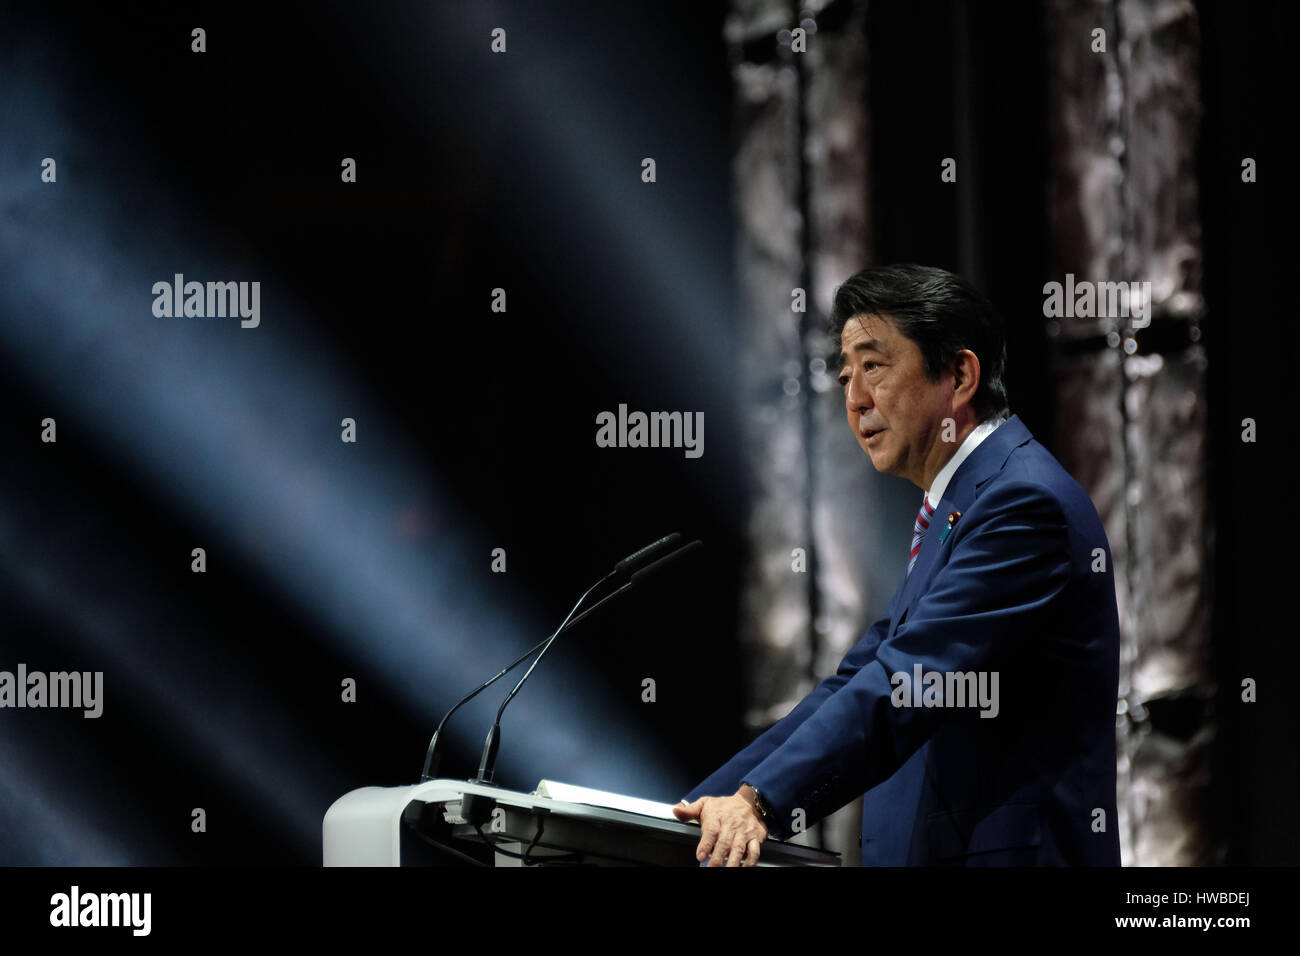 Hannover, Deutschland. 19. März 2017. Premierminister von Japan Shinzo Abe anlässlich der Eröffnung der CeBIT in Hannover, 19. März 2017. Japan ist das Partnerland der CeBIT 2017. Foto: Peter Steffen/Dpa/Alamy Live News Stockfoto